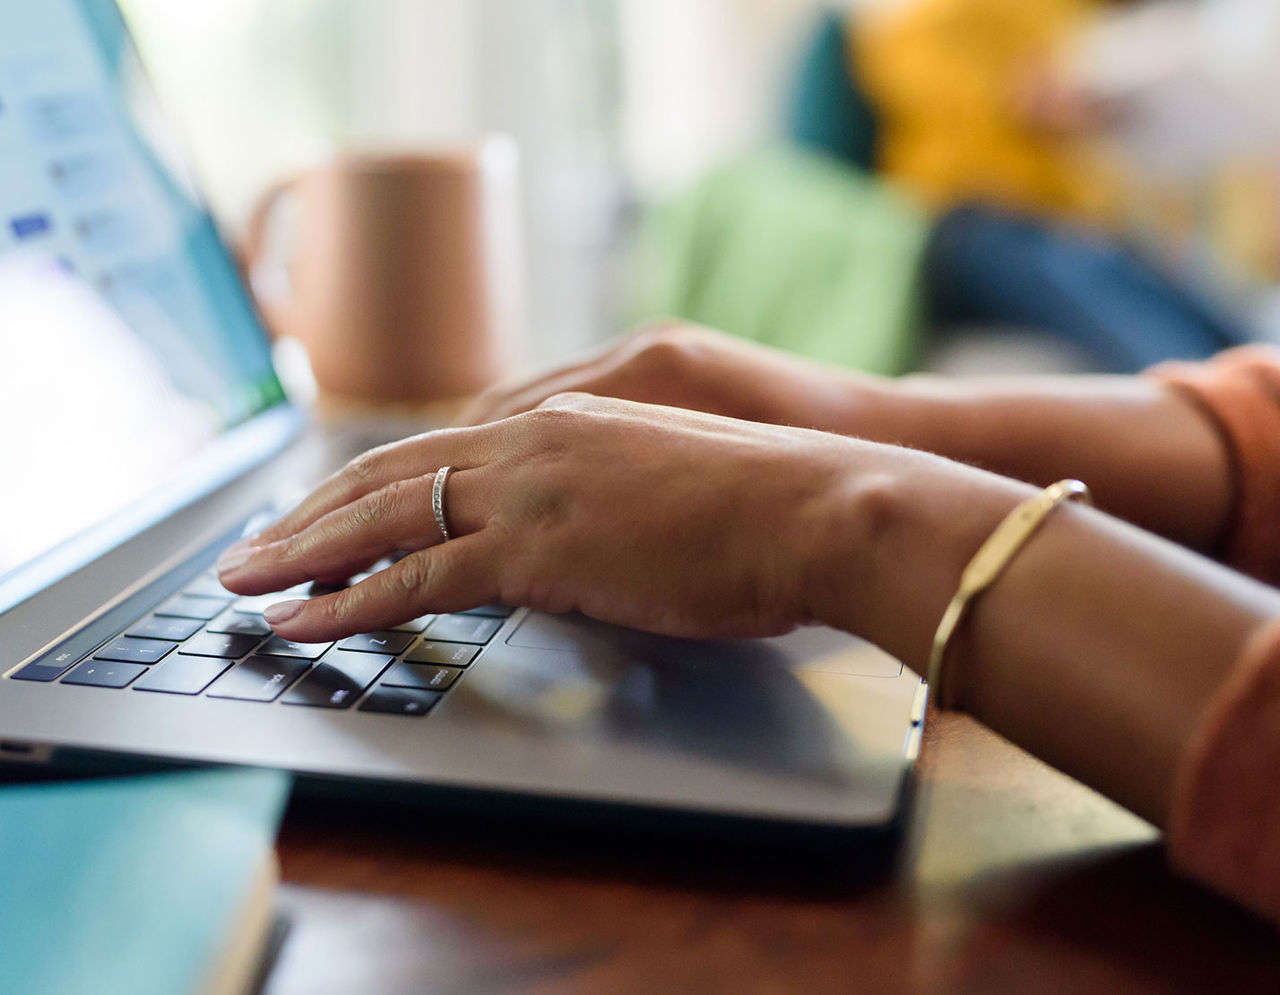 امرأة تكتب على جهاز كمبيوتر محمول للتواصل مع فريق ماس جنرال بريغهام للمرضى الدوليين